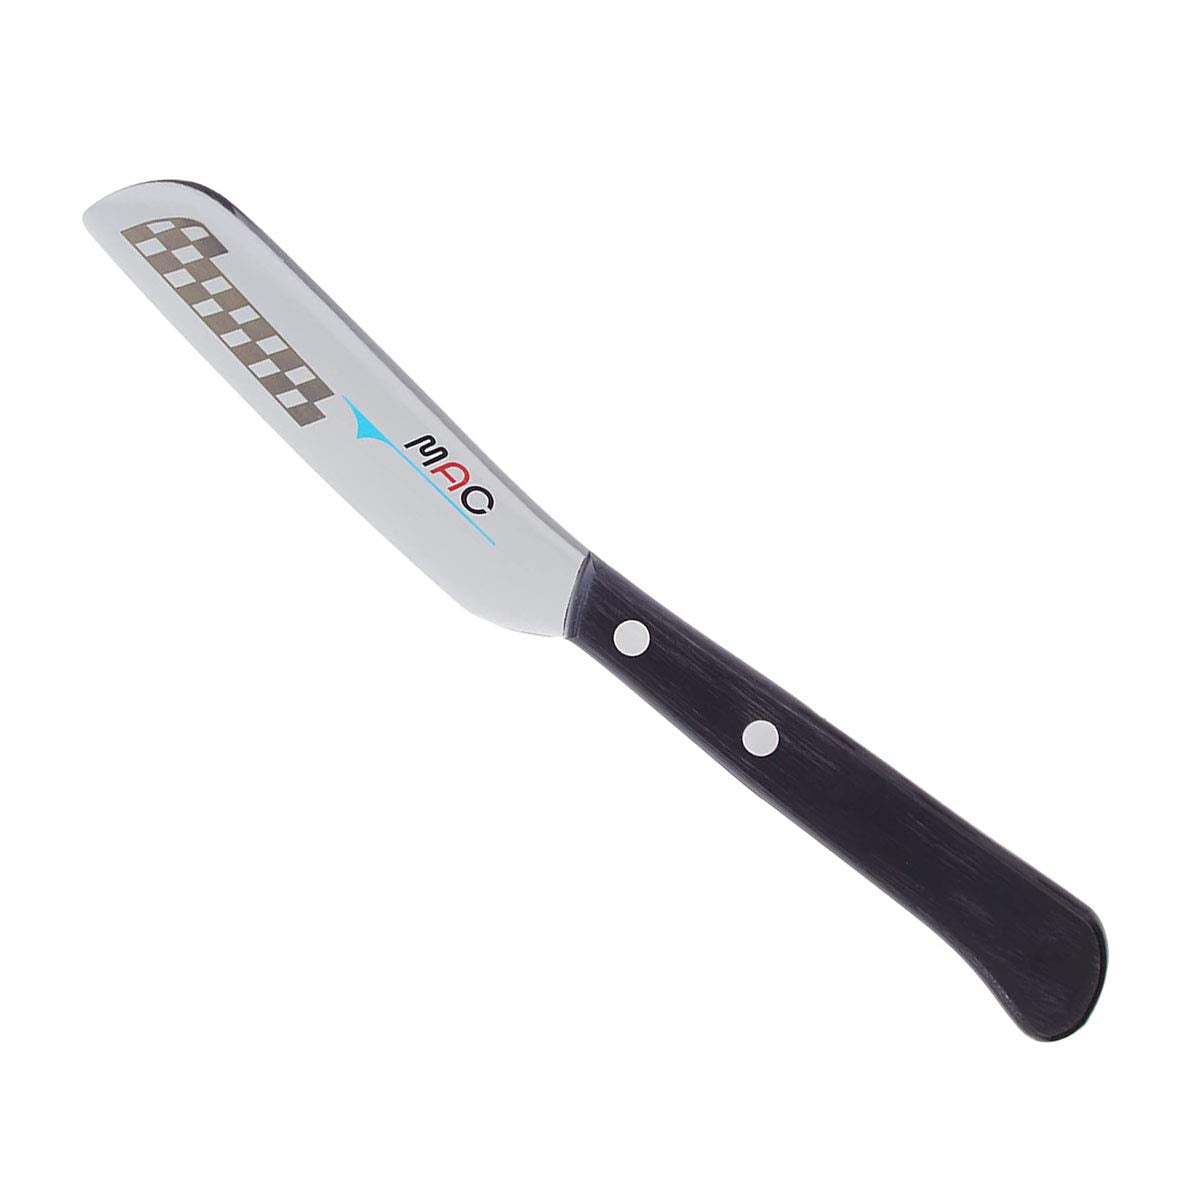 Mac Morning Butter Knife Mk-40 #9845499 21x10cm Japan